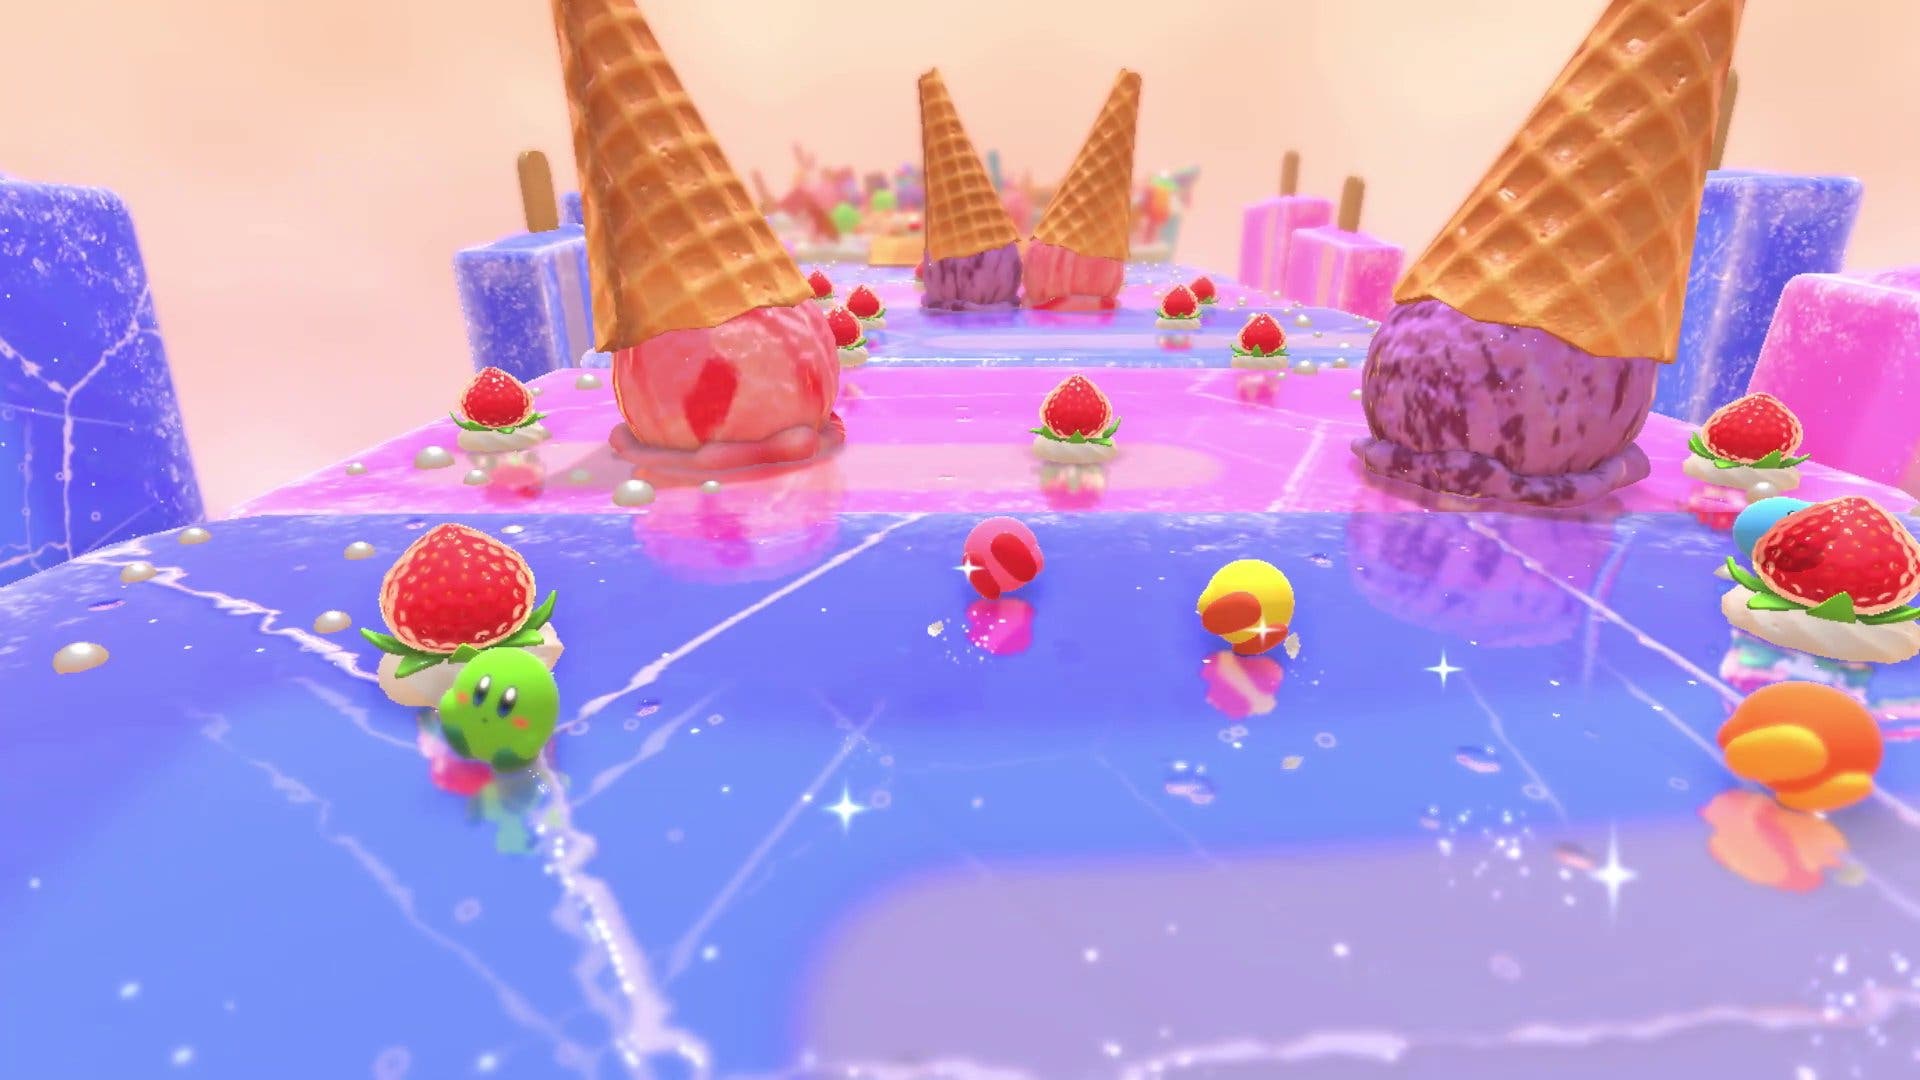 Confirmado: Kirby’s Dream Buffet no será gratuito y solo se lanzará en la eShop